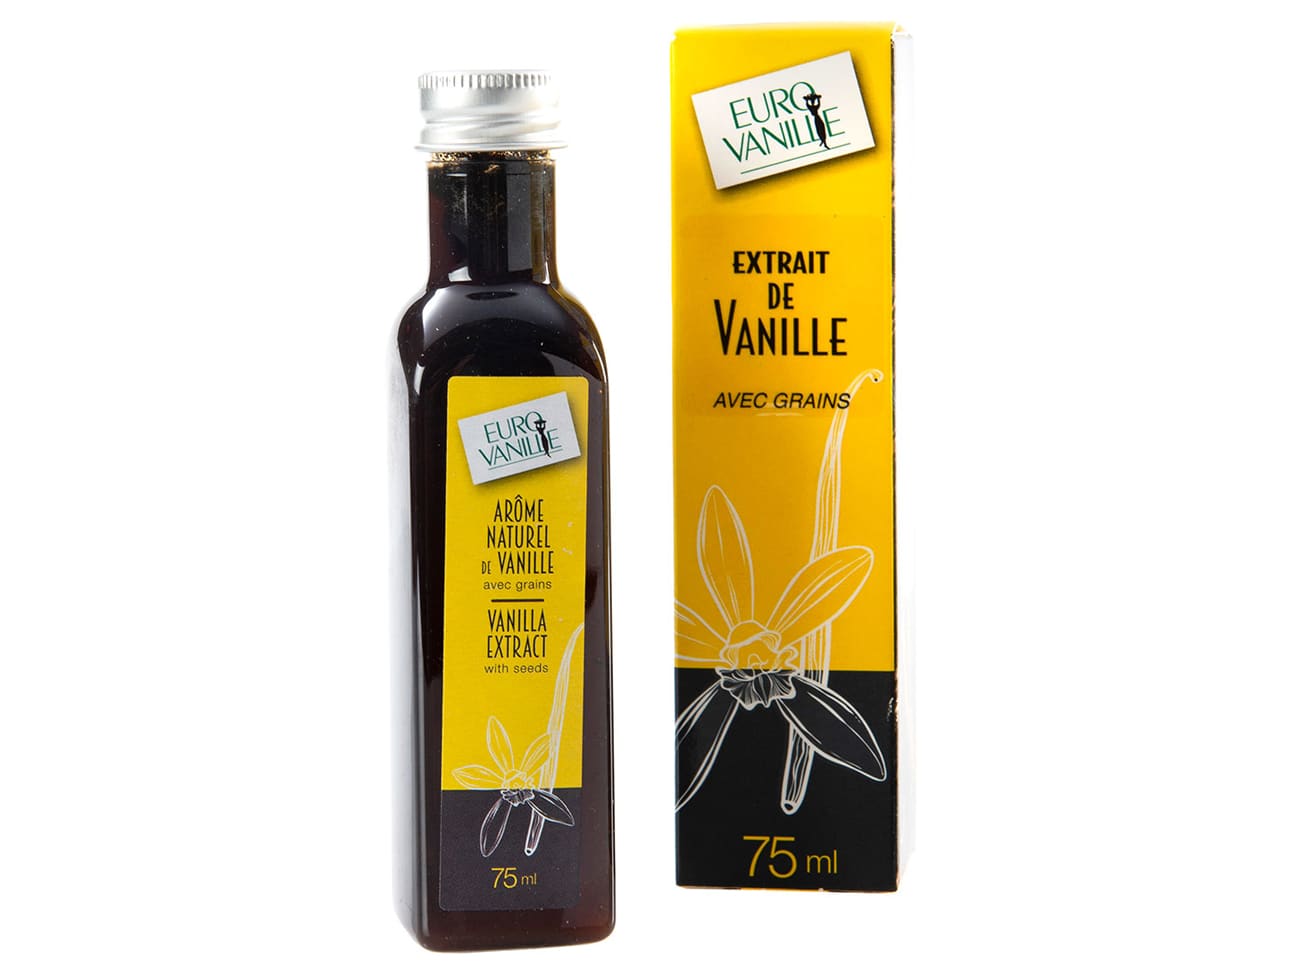 Extrait de vanille bio avec grains Eurovanille - Meilleur du Chef